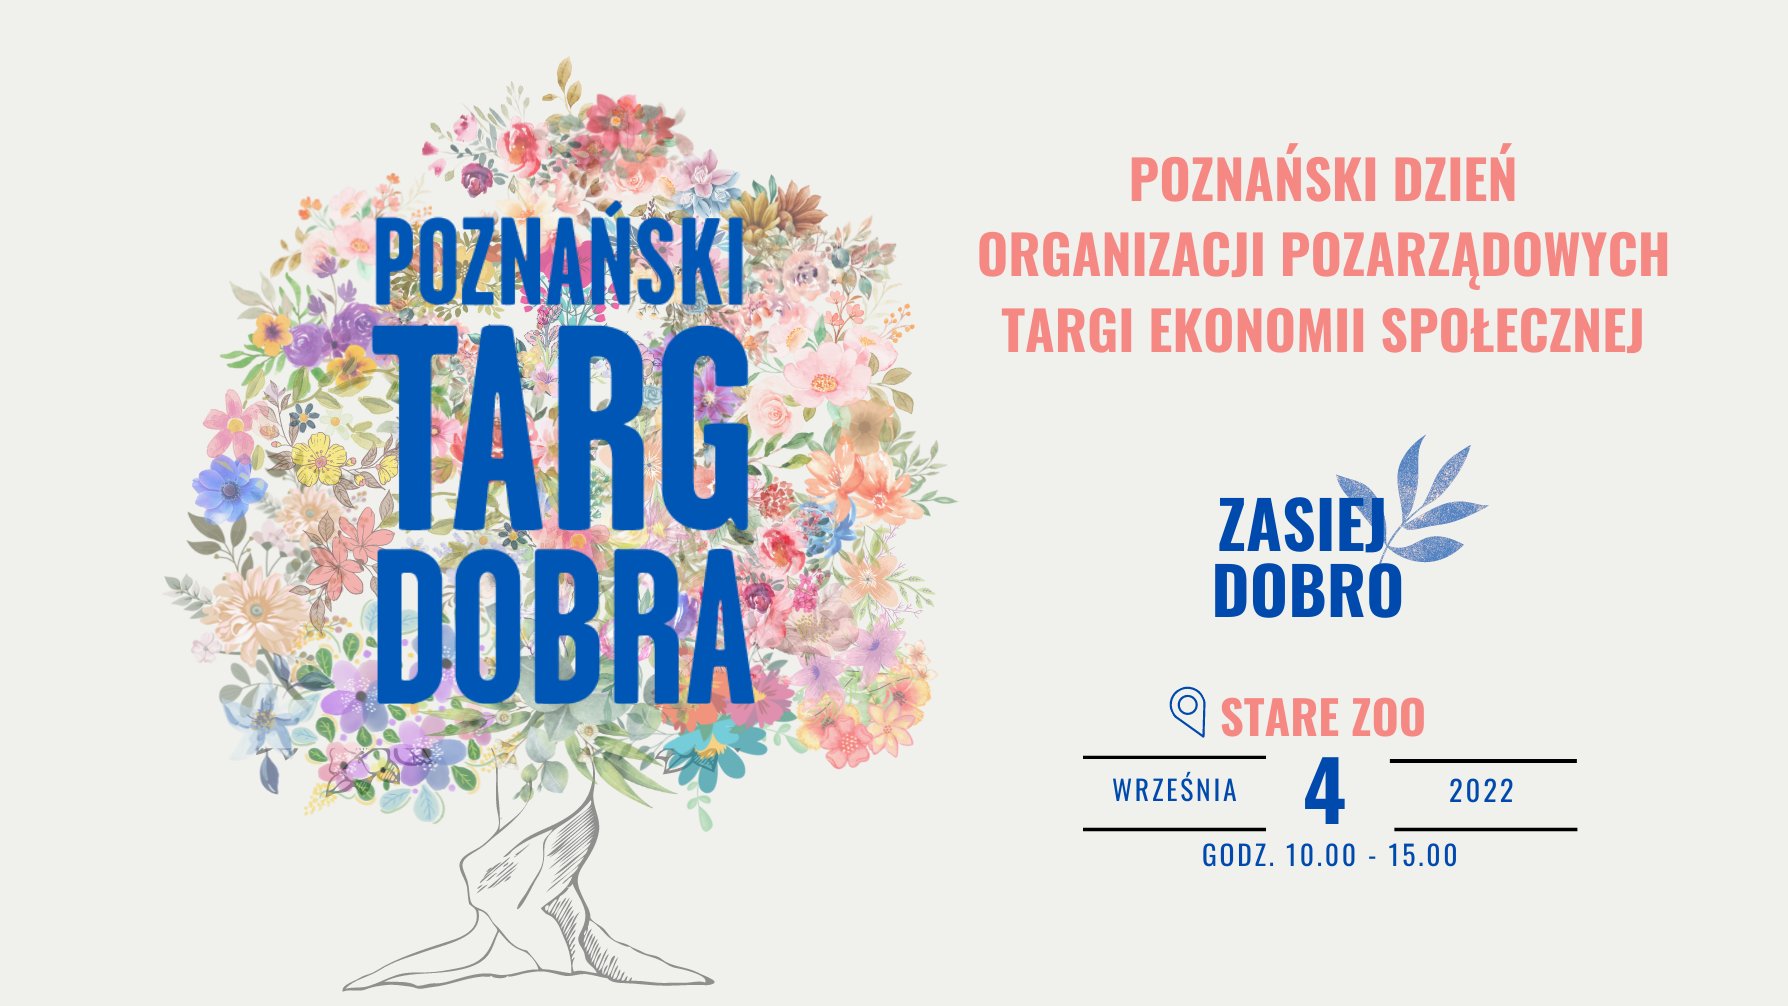 Po lewej drzewo, zamiast liści ma kolorowe kwiaty, na ich tle niebieski napis poznański trag dobra. po prawej napis poznański dzień organizacji poarządowych targii ekonomii społecznej. zasiej dobro stare zoo - grafika artykułu